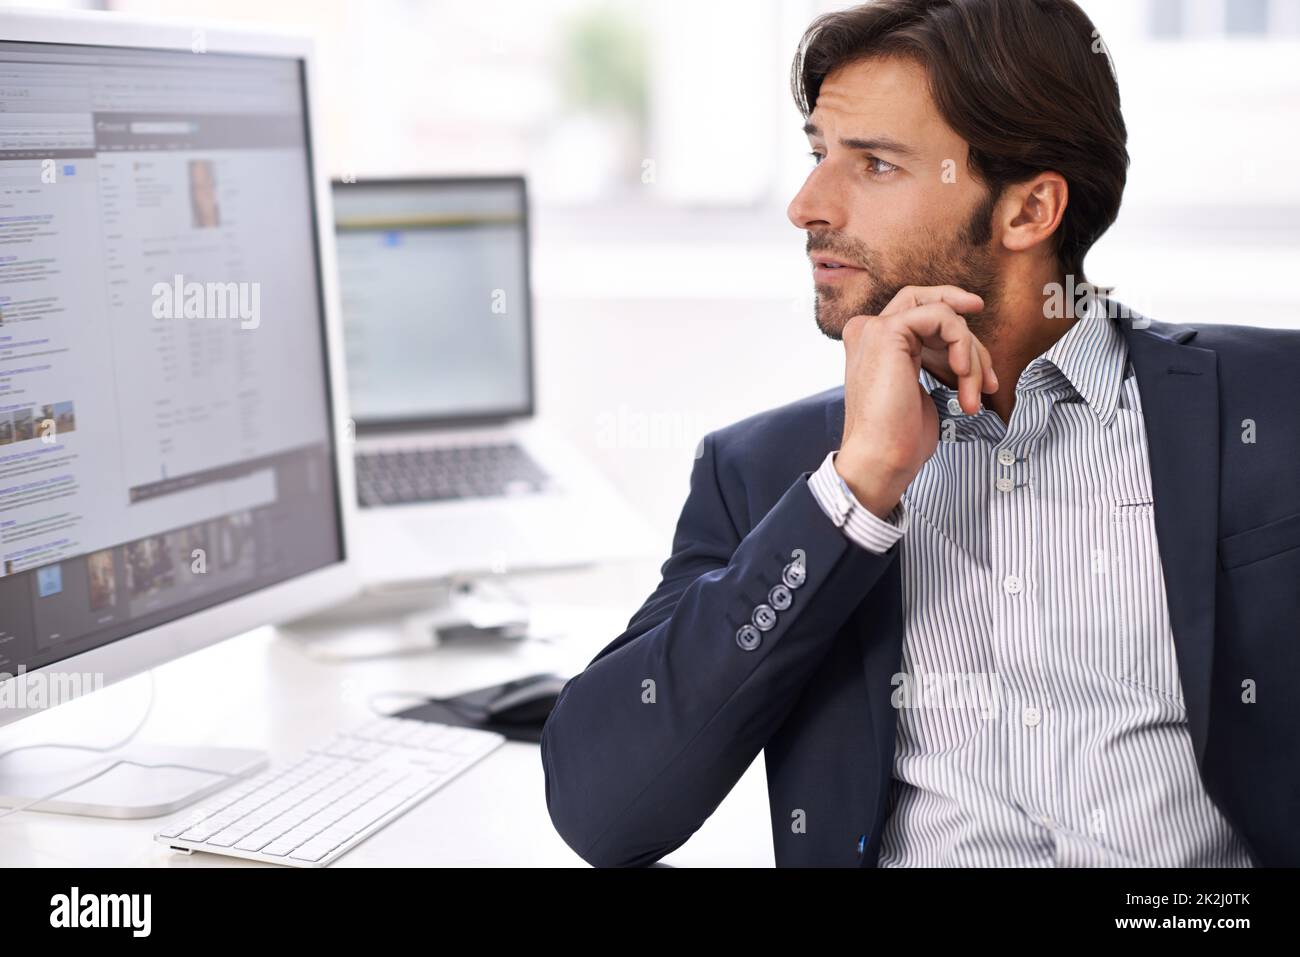 La contemplation sur le lieu de travail.Un jeune homme d'affaires faisant des recherches sur son ordinateur. Banque D'Images